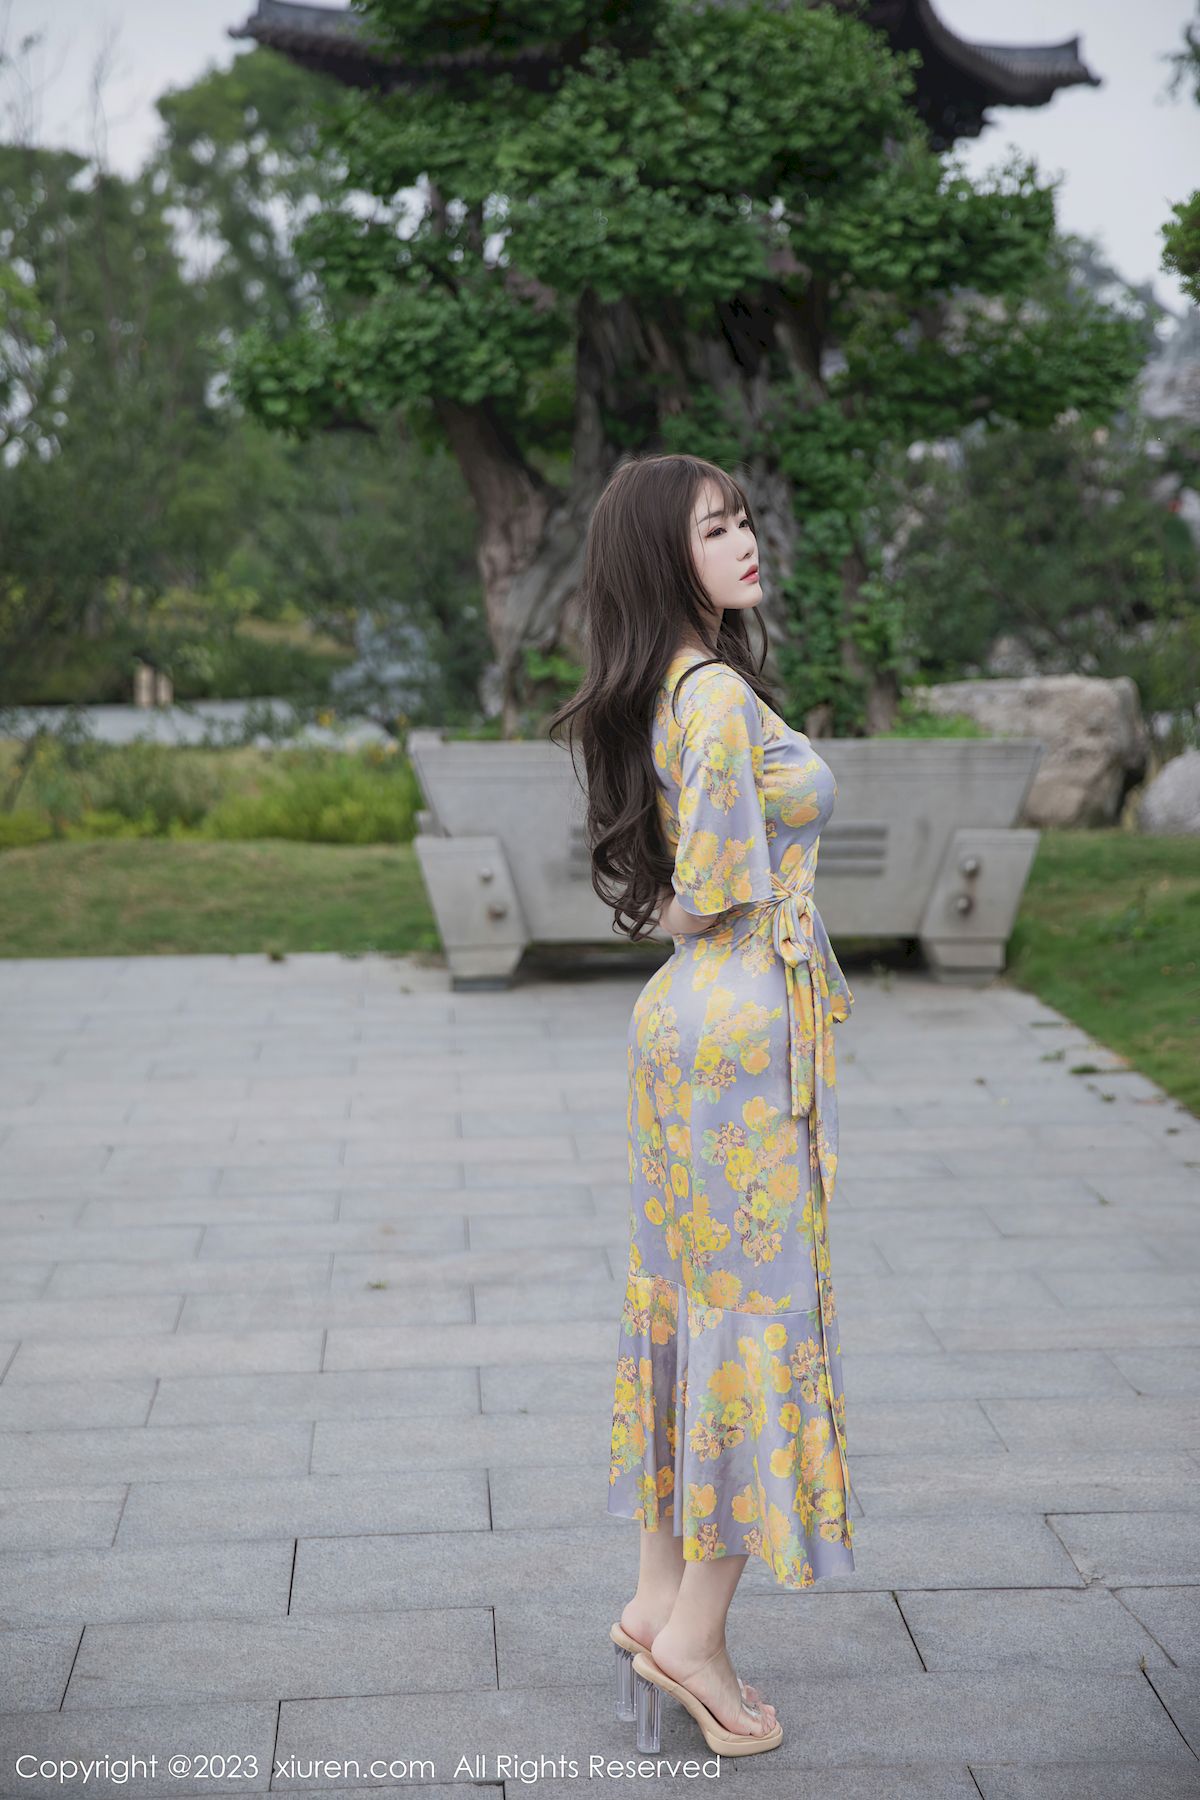 严利娅Yuliya黄灰色睡裙高挑身材性感写真